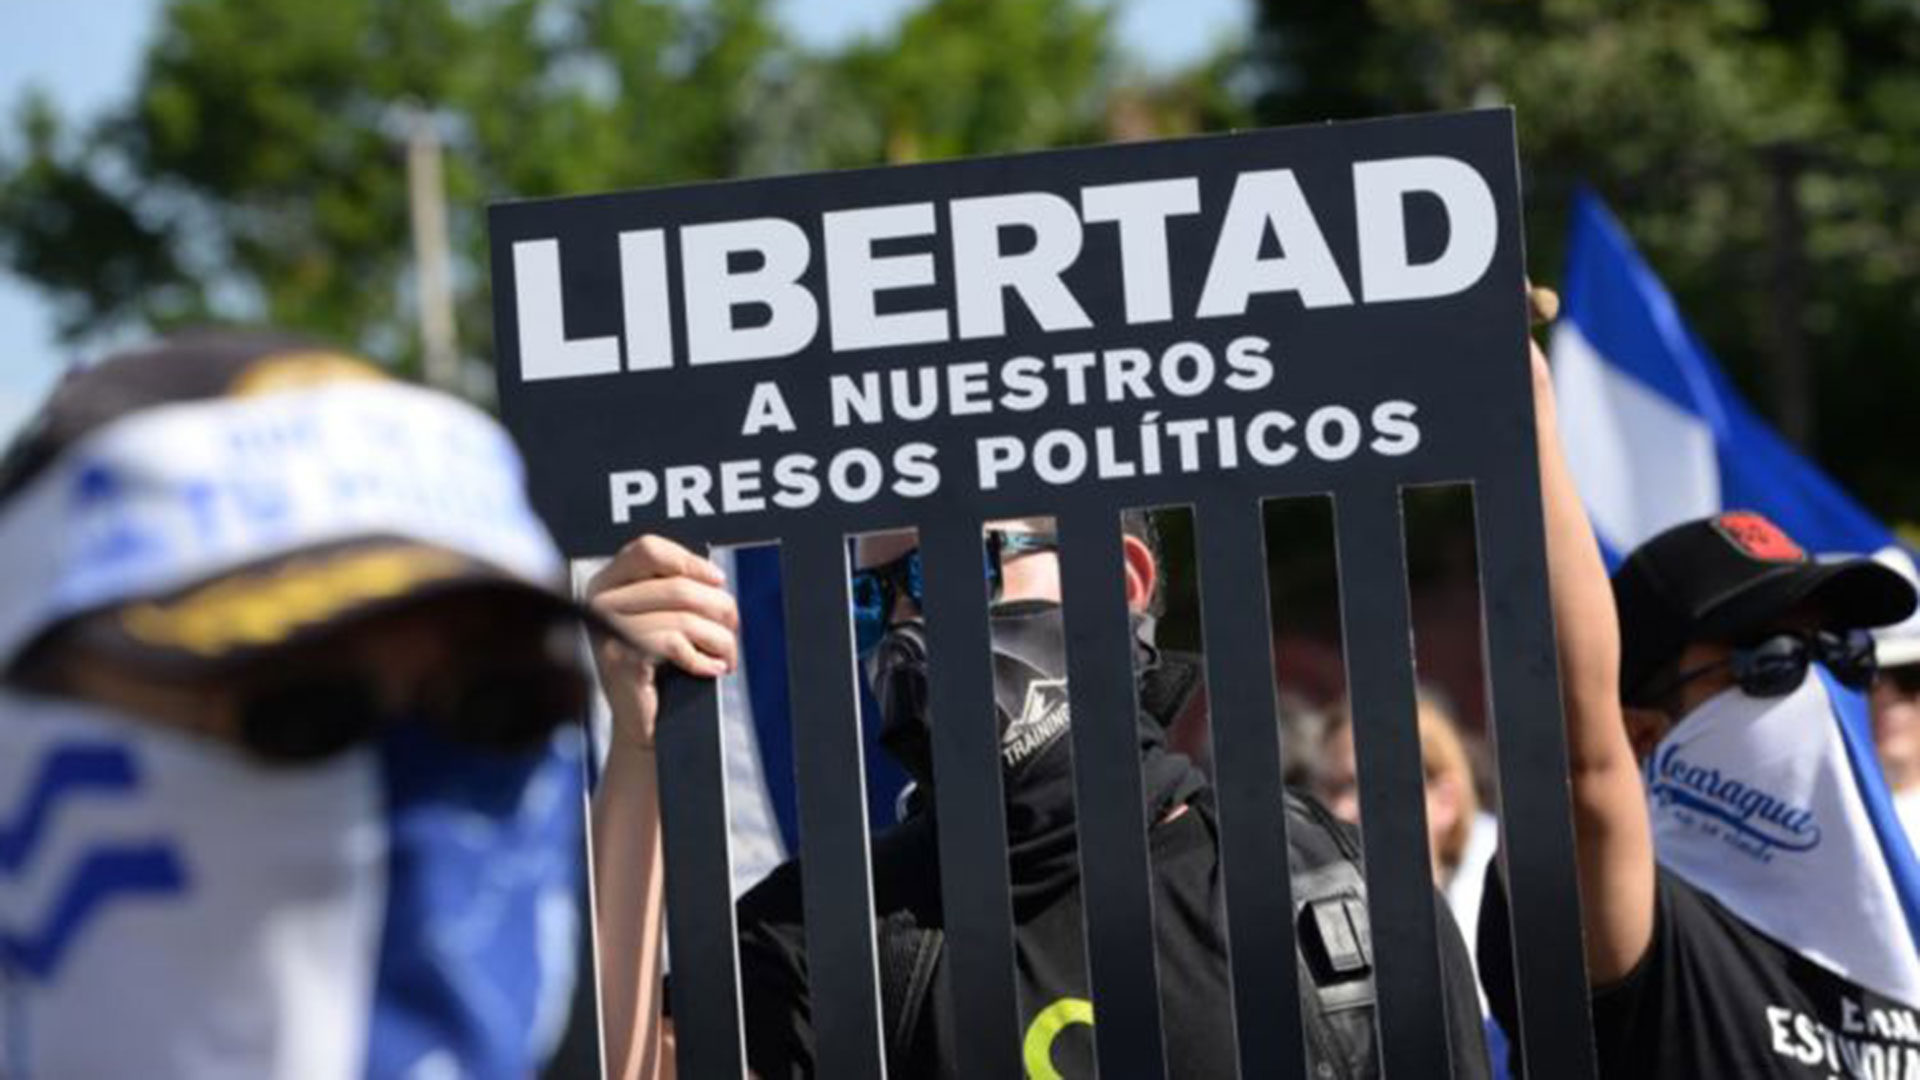 La libertad de unos 120 presos políticos es una demanda fuerte de amplios sectores de la población nicaragüense. (Cortesía La Prensa/Nicaragua)